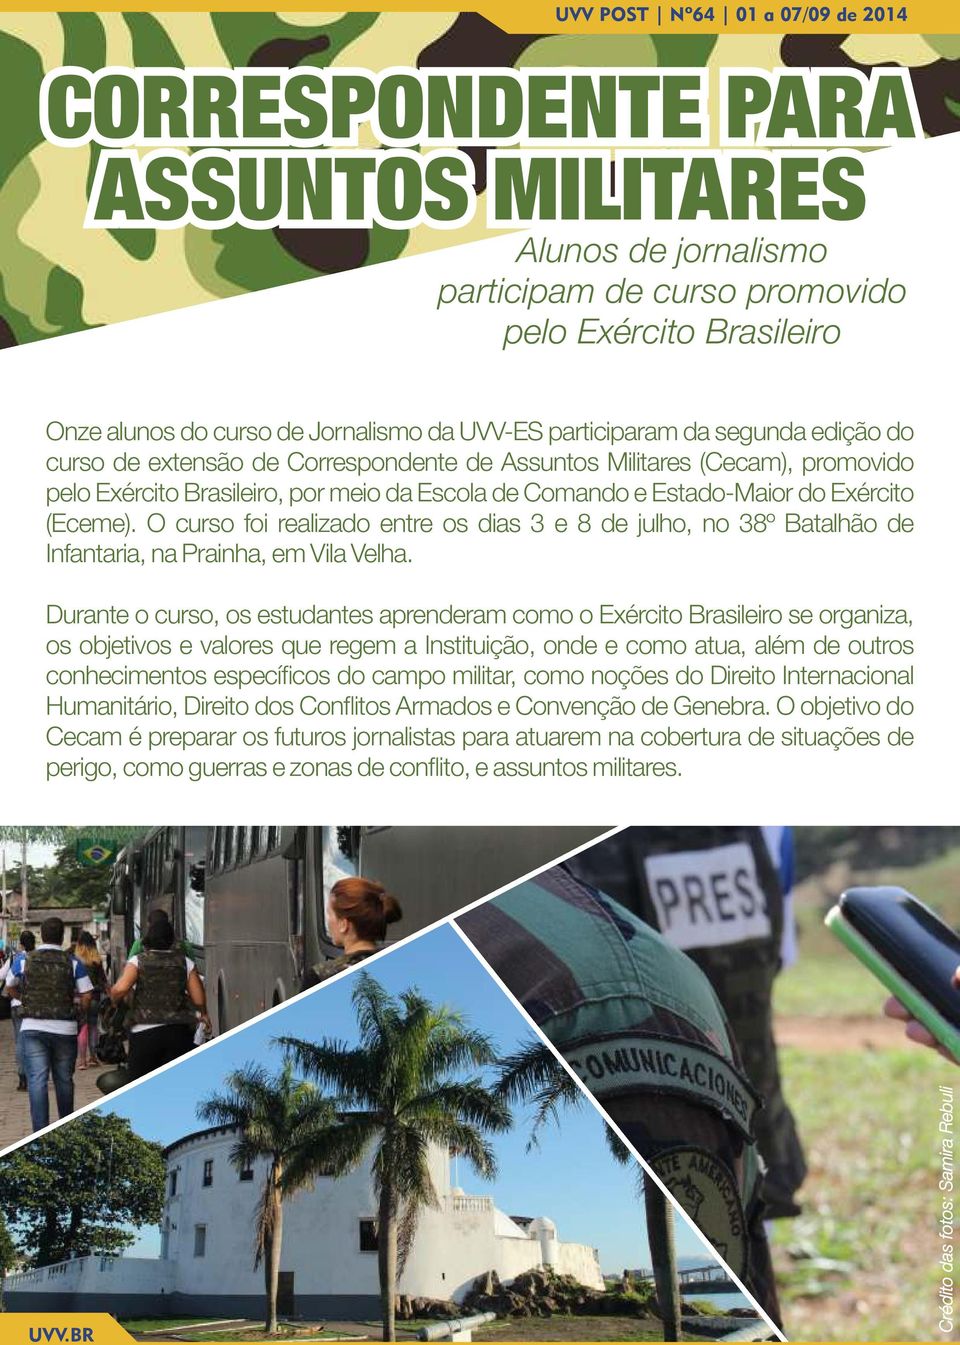 O curso foi realizado entre os dias 3 e 8 de julho, no 38º Batalhão de Infantaria, na Prainha, em Vila Velha.